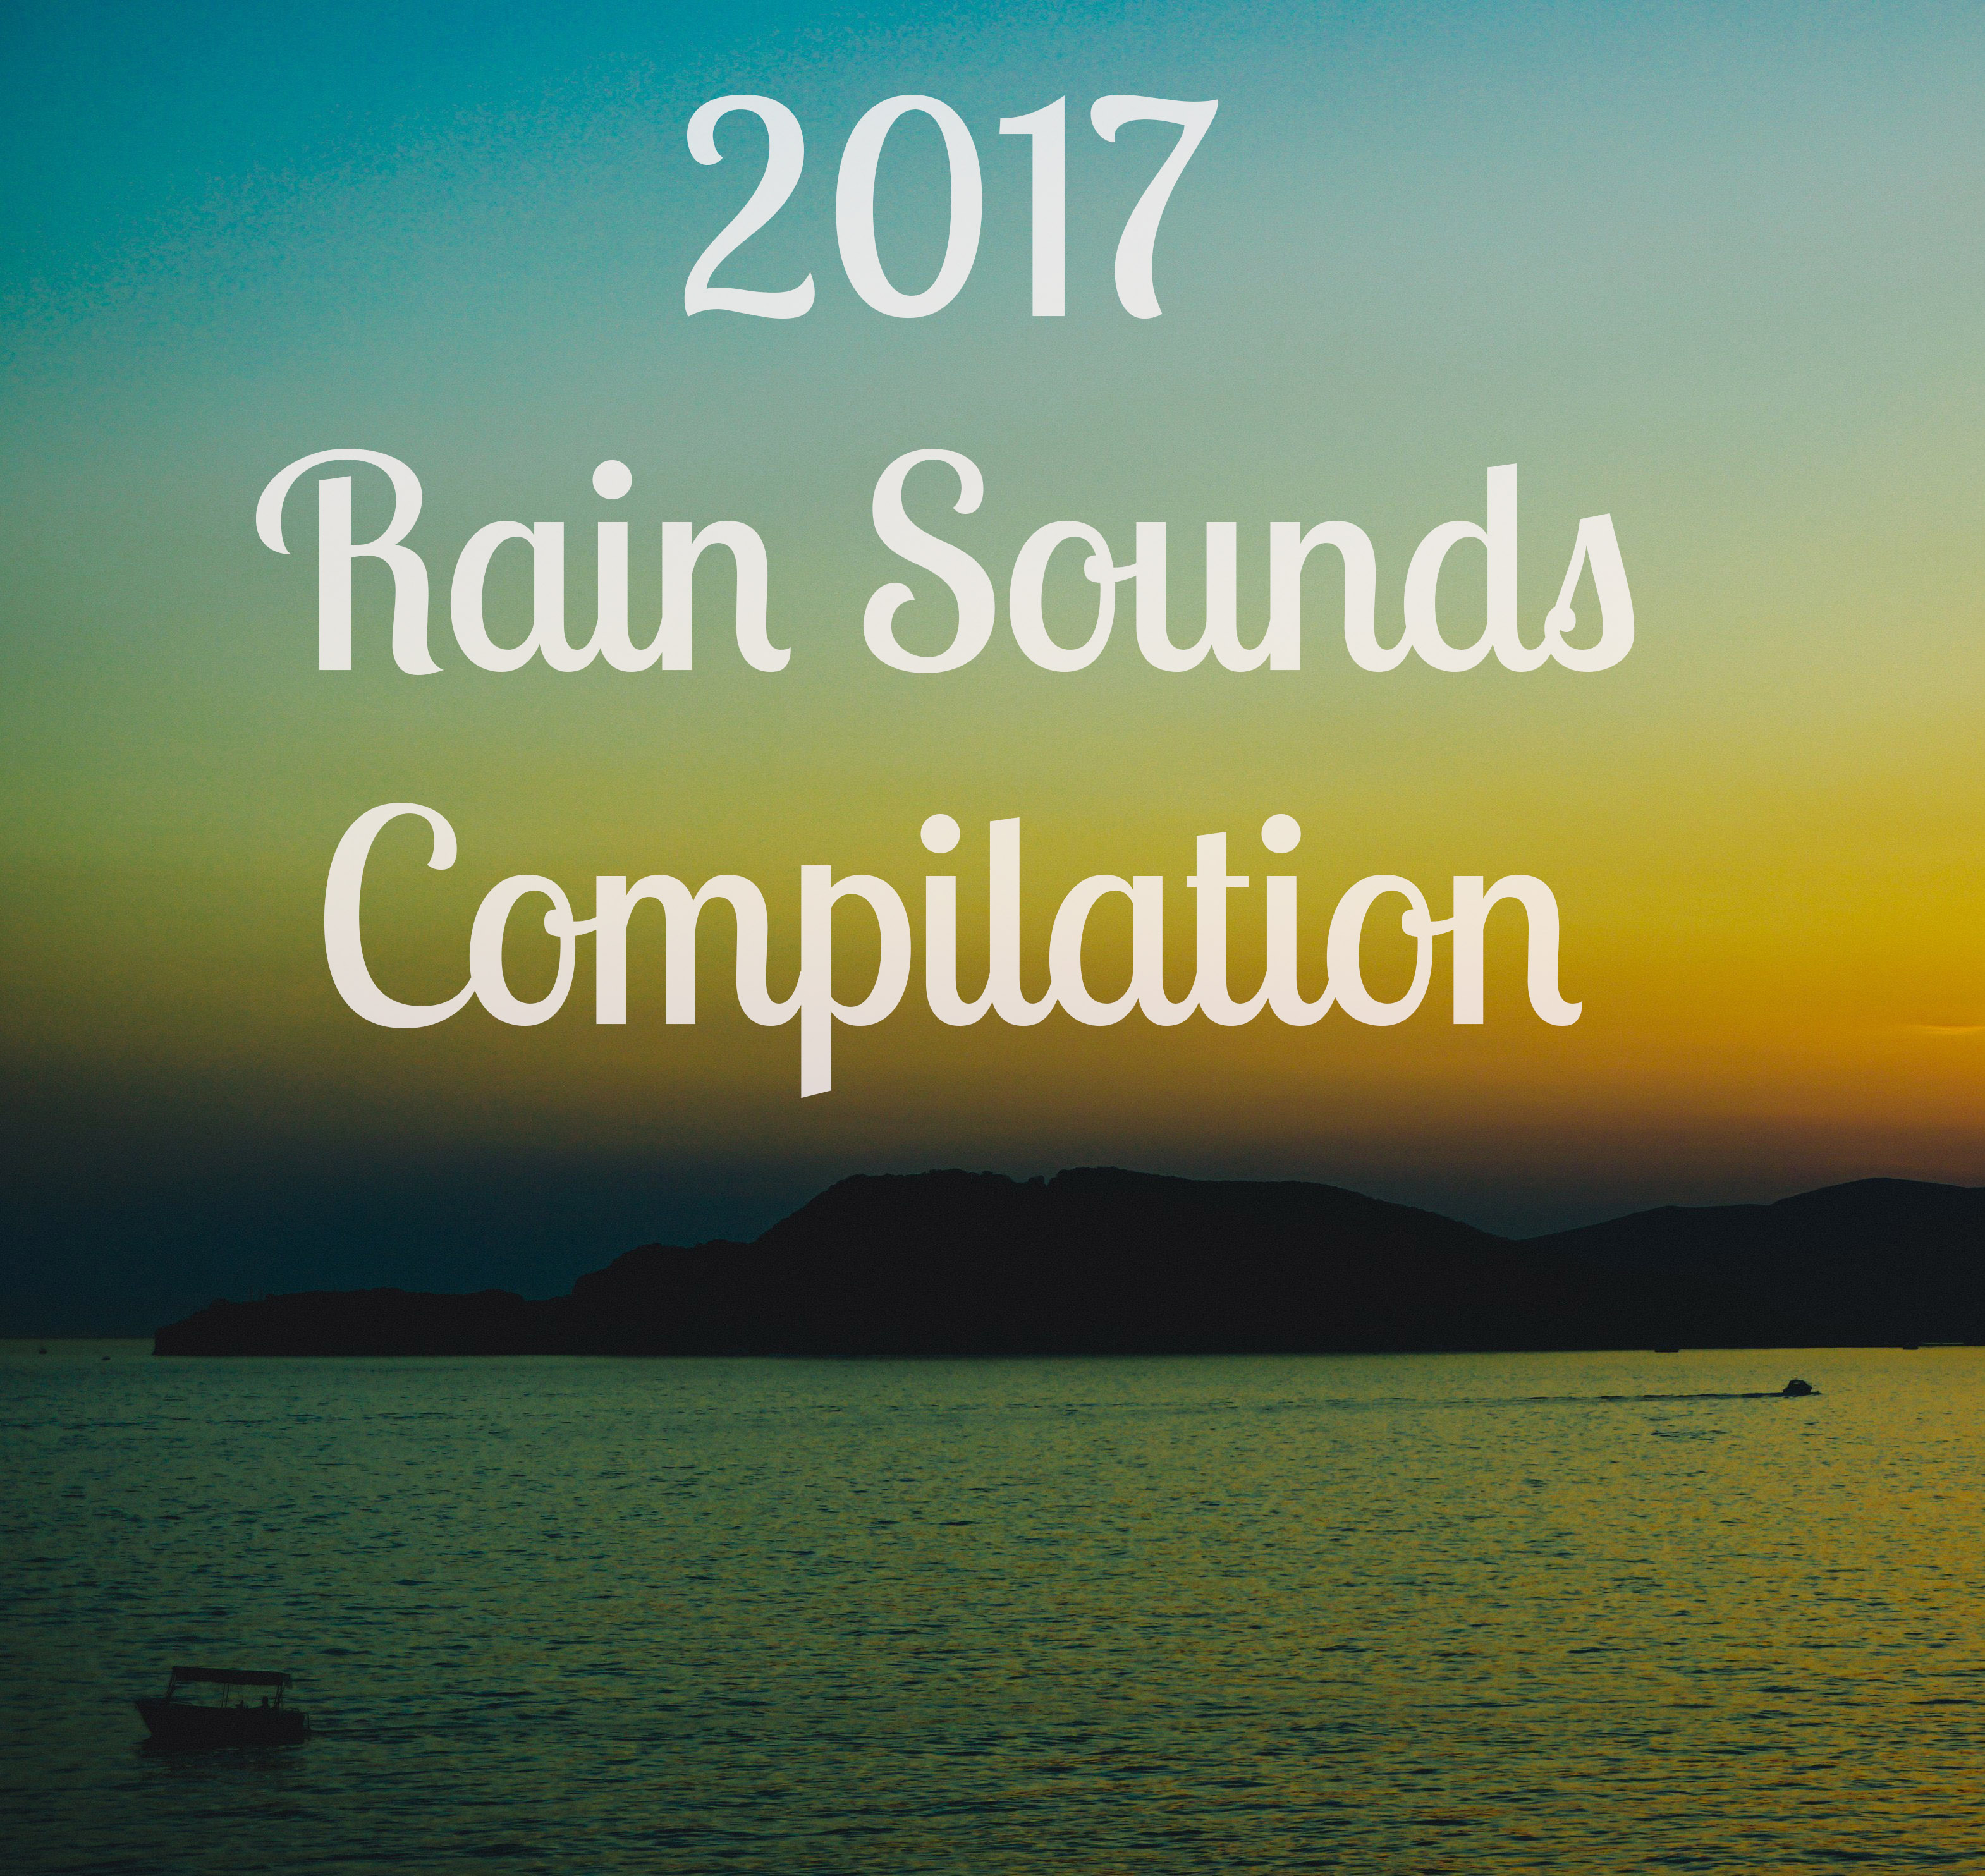 2017 Rain Sounds Compilation